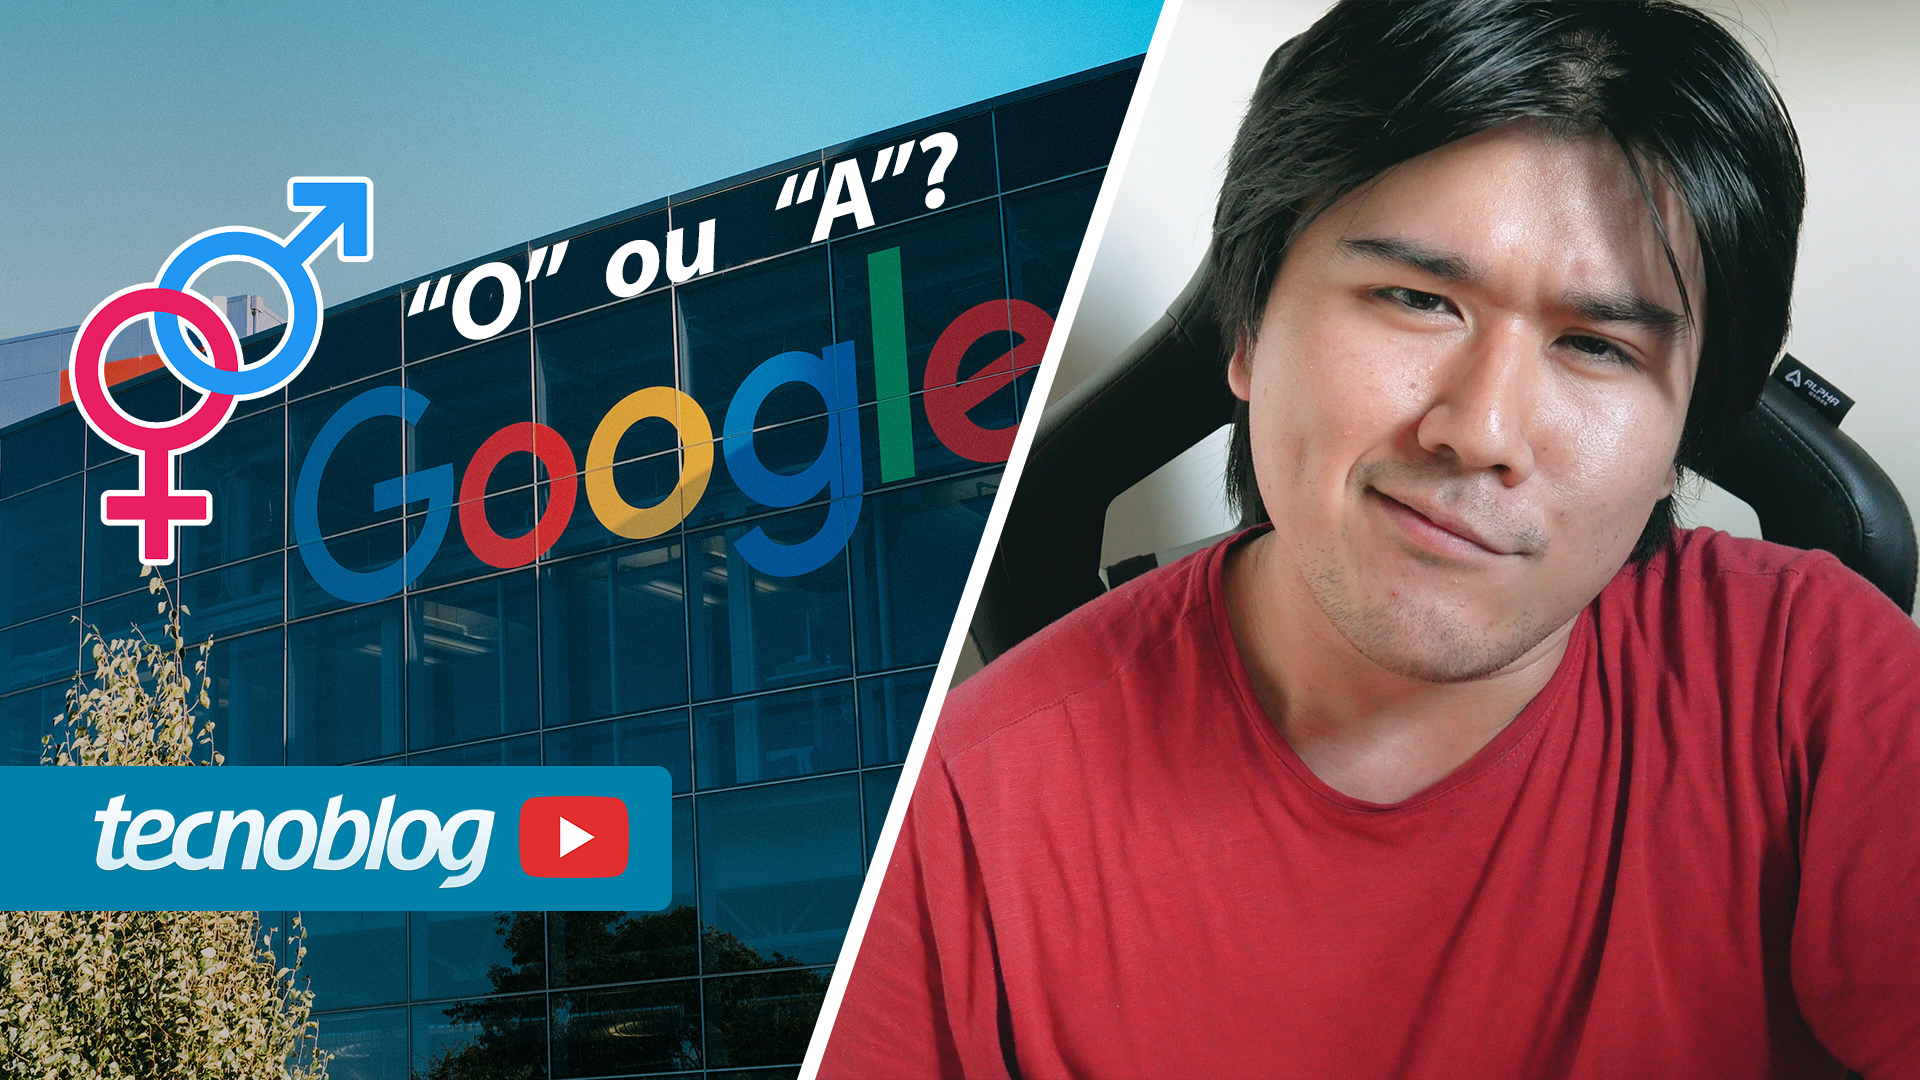 O certo é “o Google” ou “a Google”?